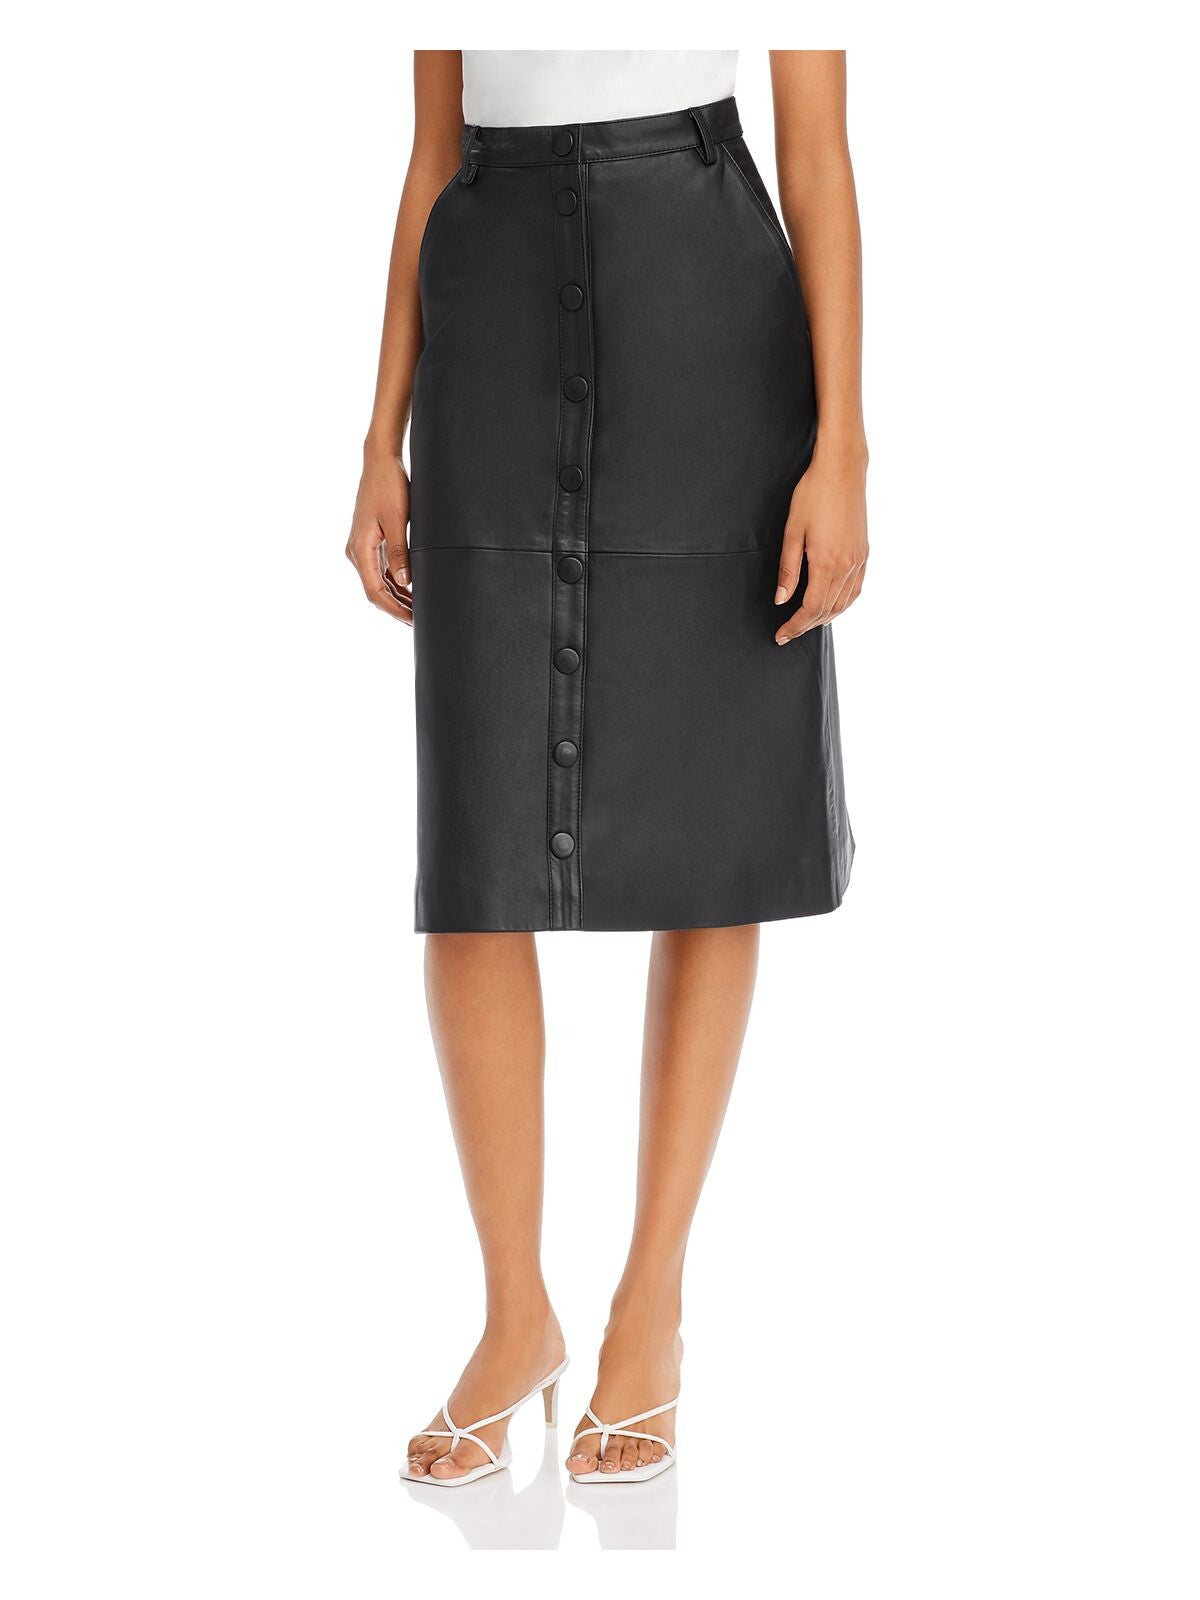 REMAIN Womens Black Knee Length Skirt 0